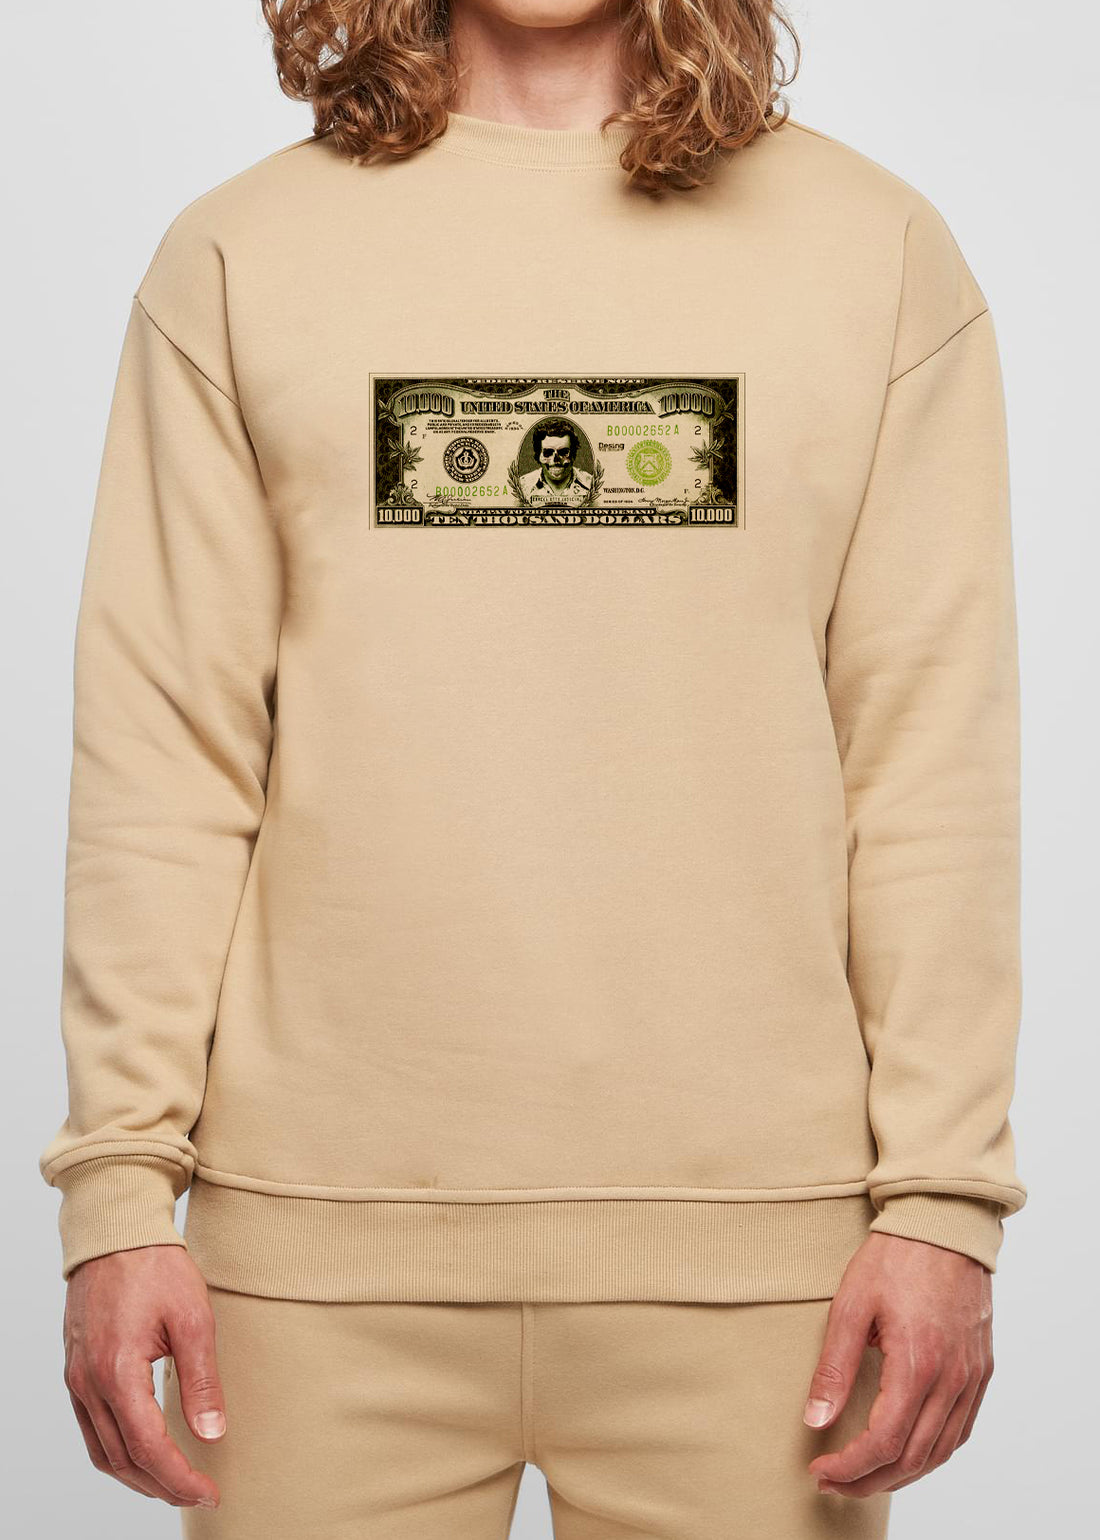 DPM69 Herren-Sweatshirt-Design Pablo Escobar